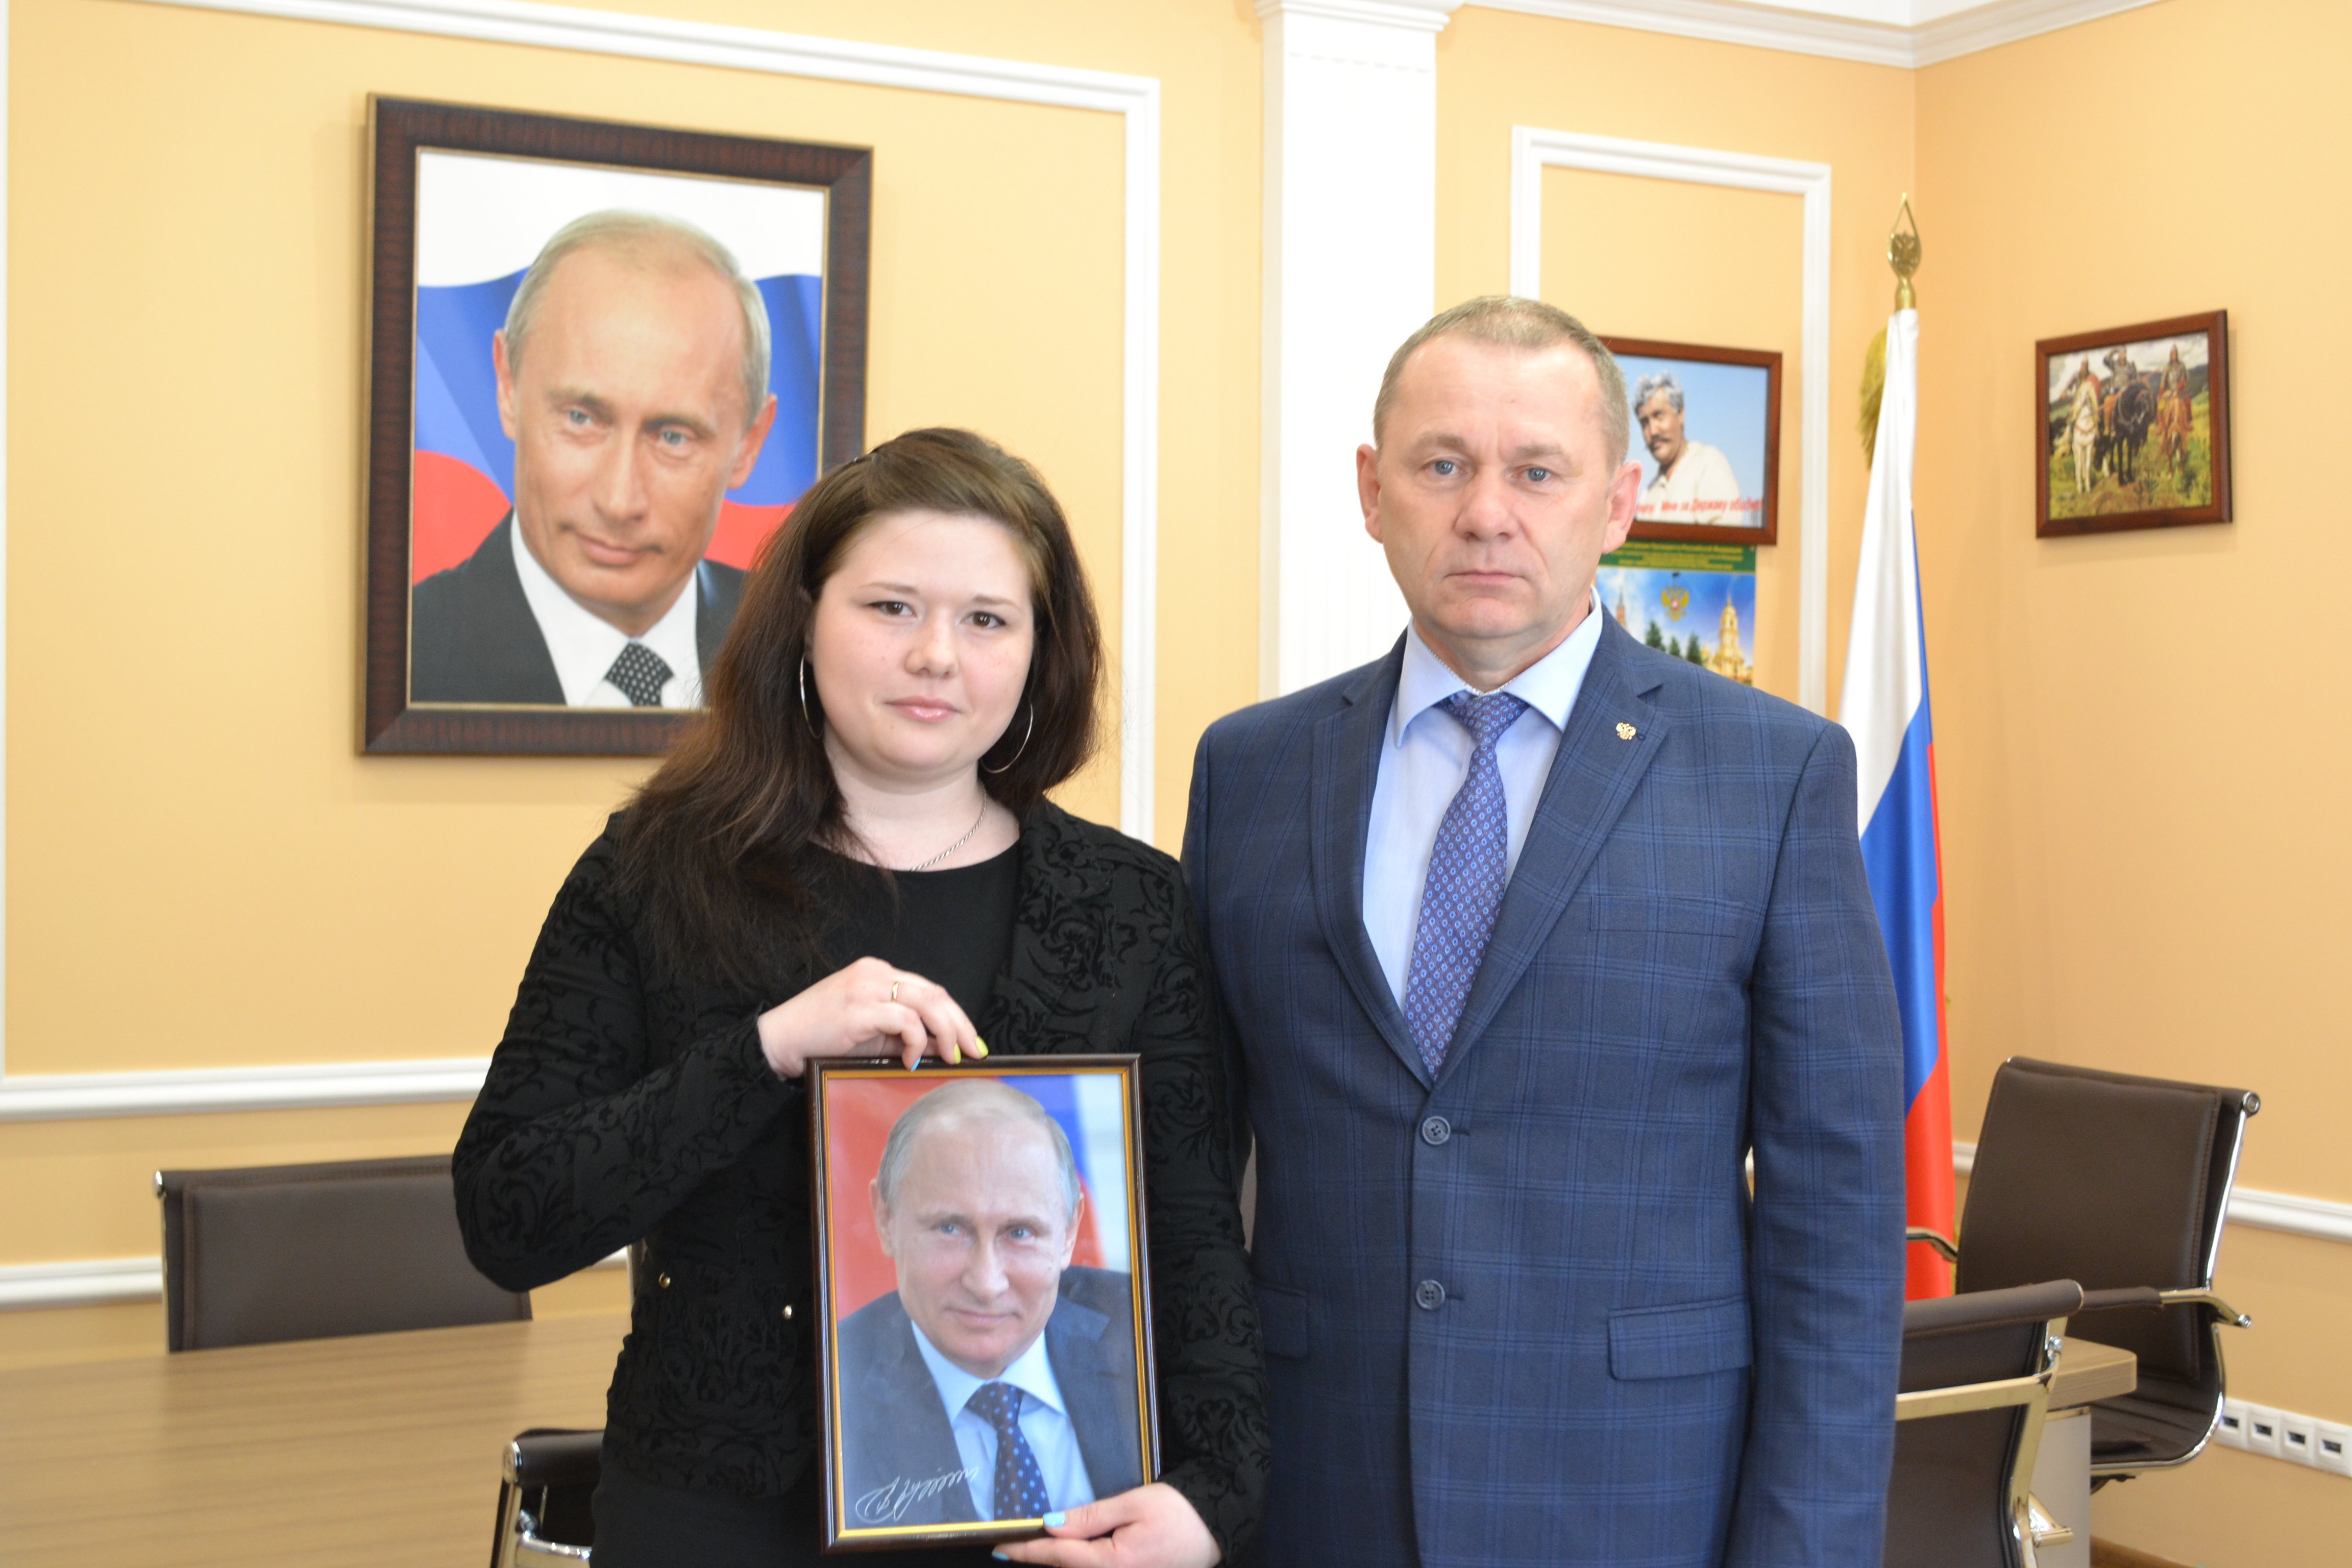 Пермячка получила в подарок портрет Путина с автографом